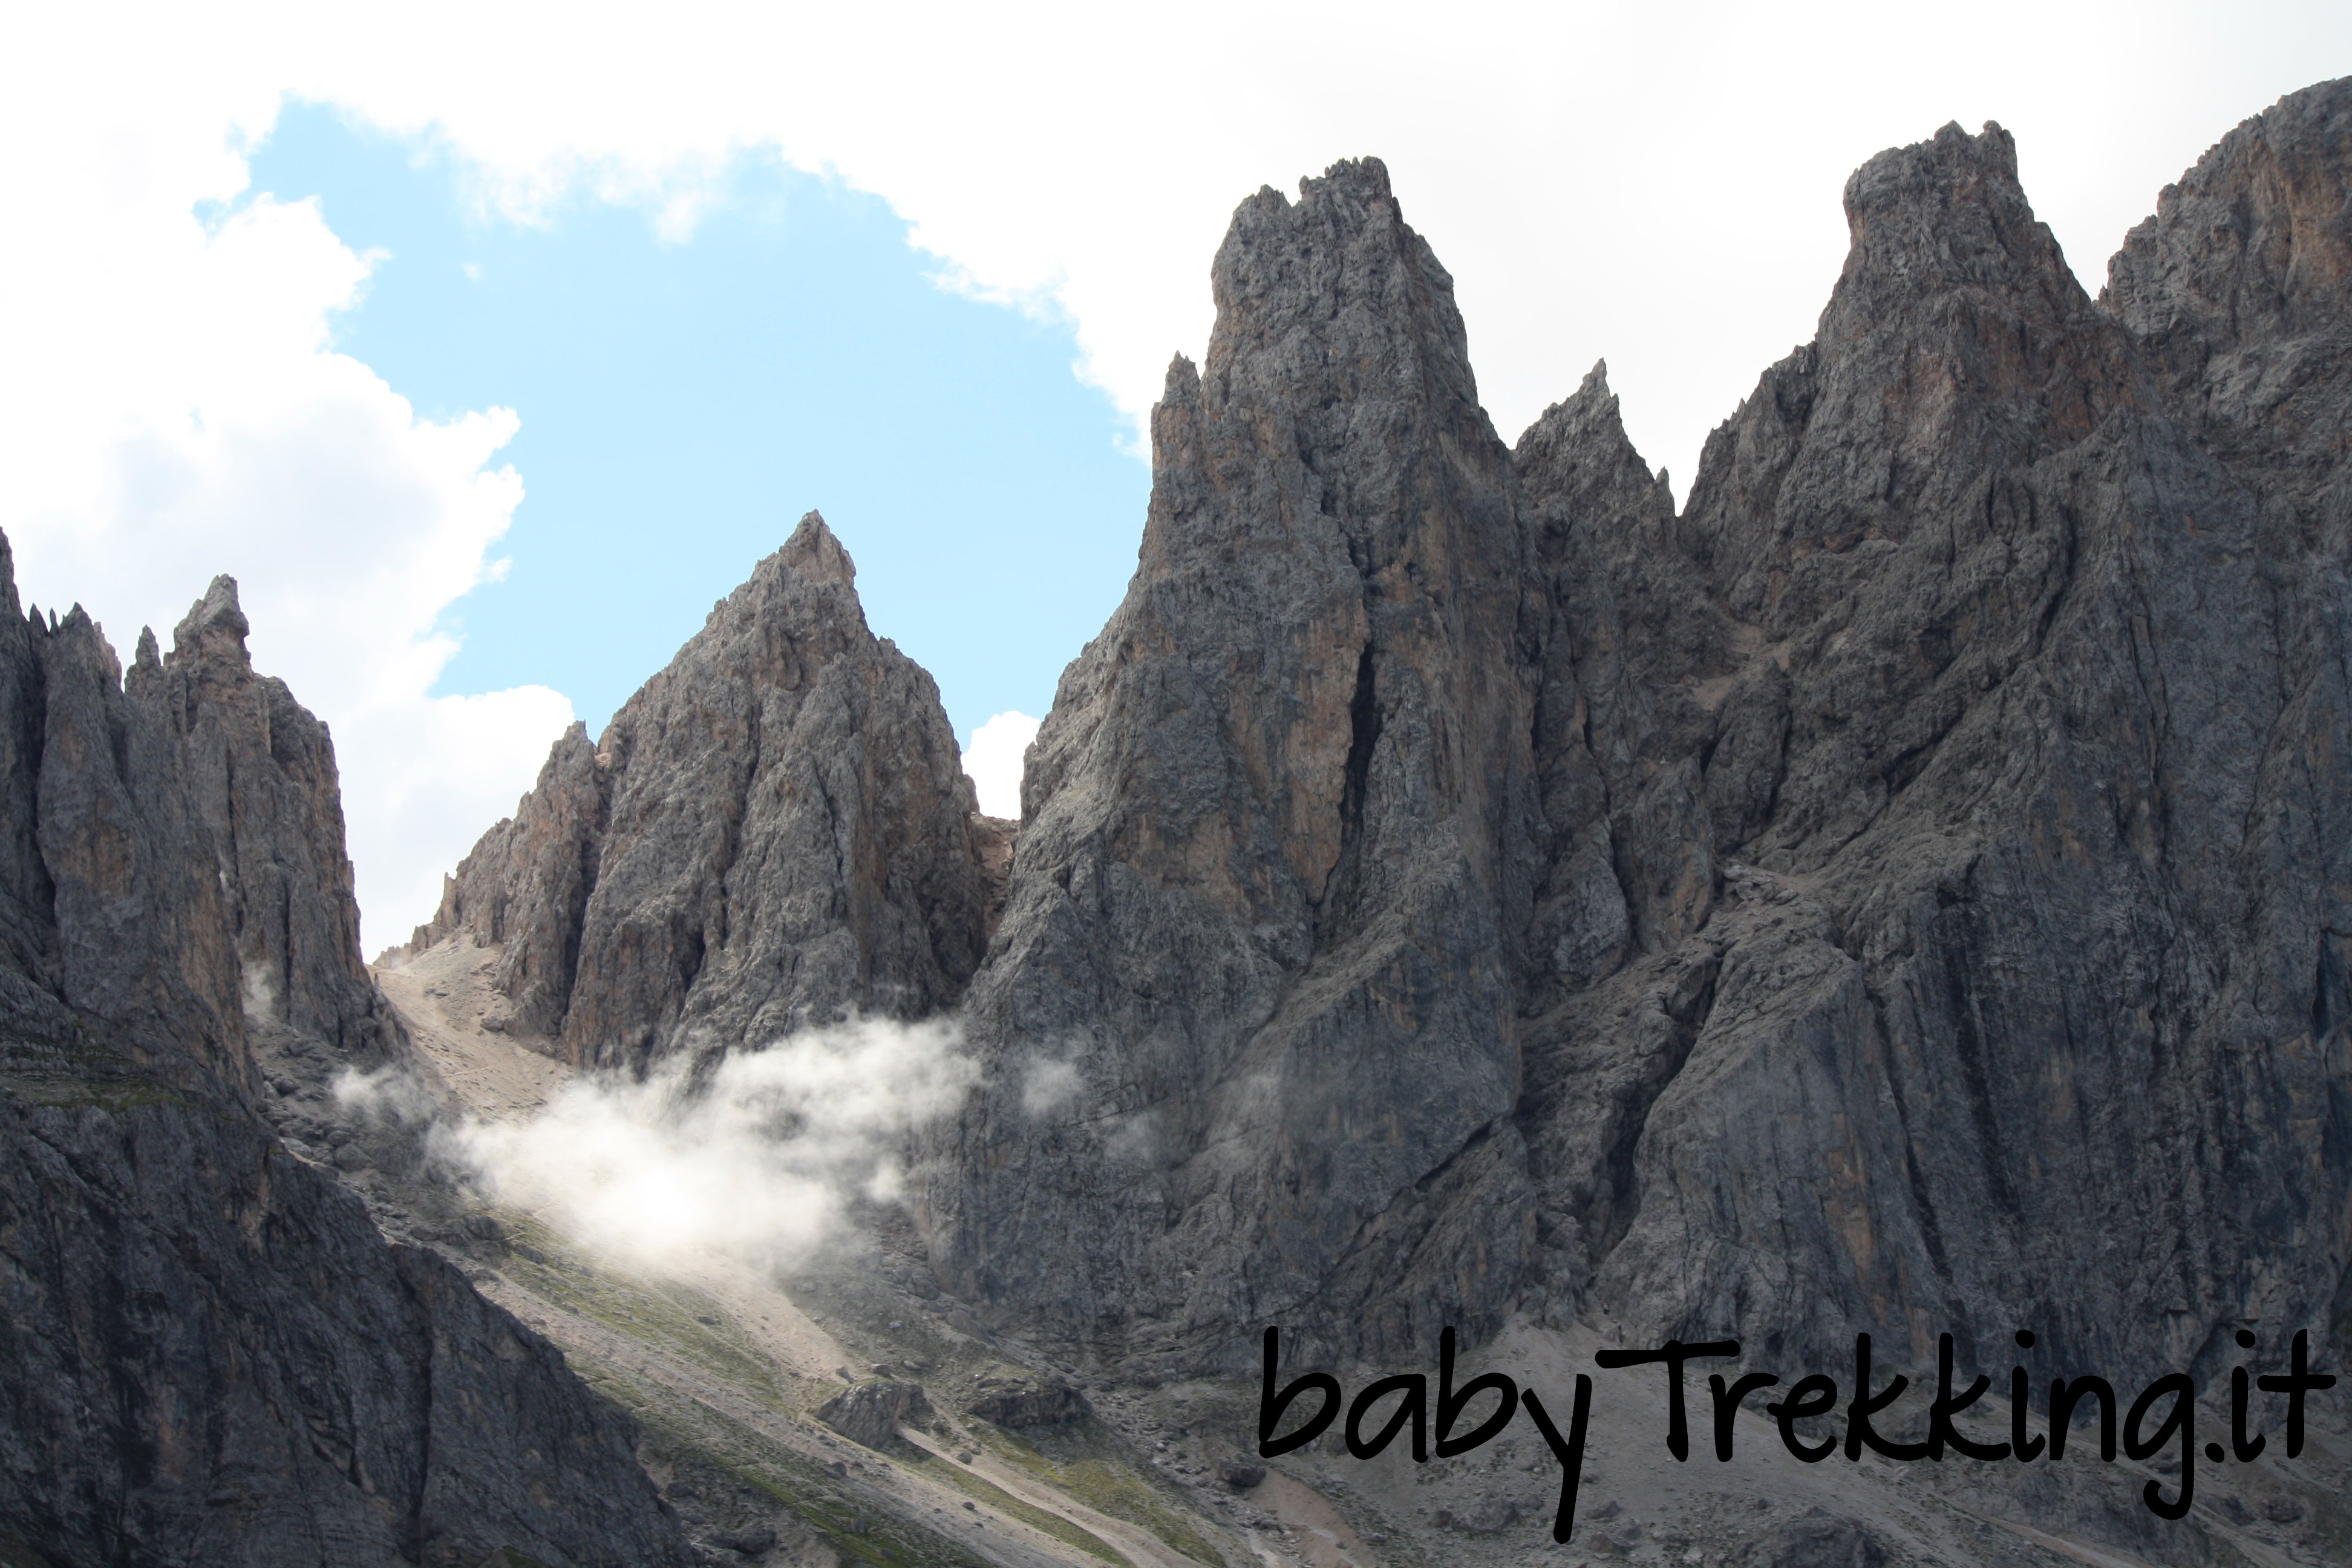 Tra le montagne dell'Alto Adige: la vacanza di una famiglia con bimba a seguito